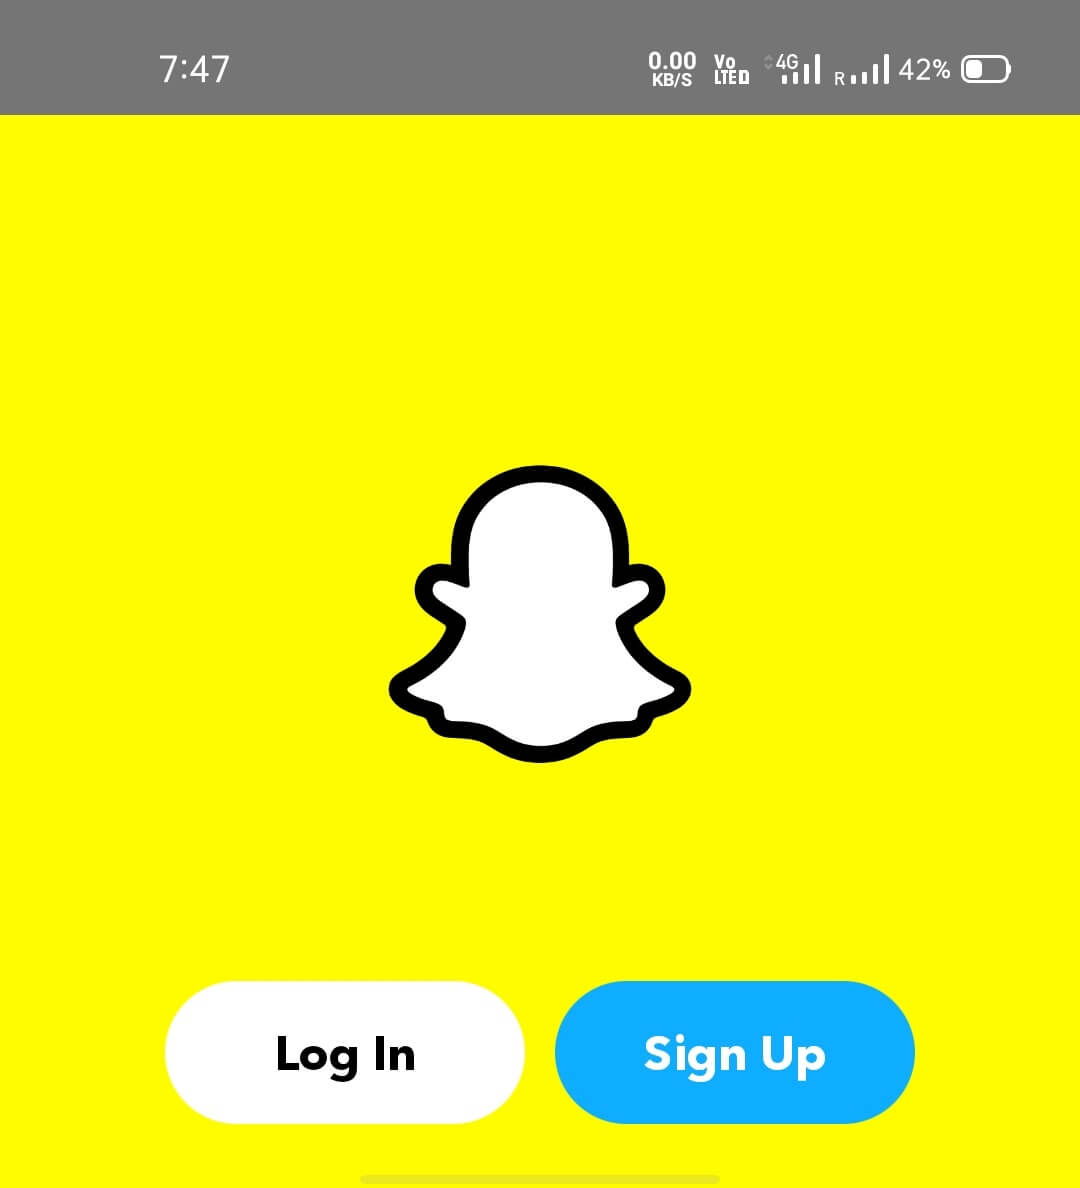 Теперь откройте приложение-клон Snapchat и завершите процесс входа или регистрации.